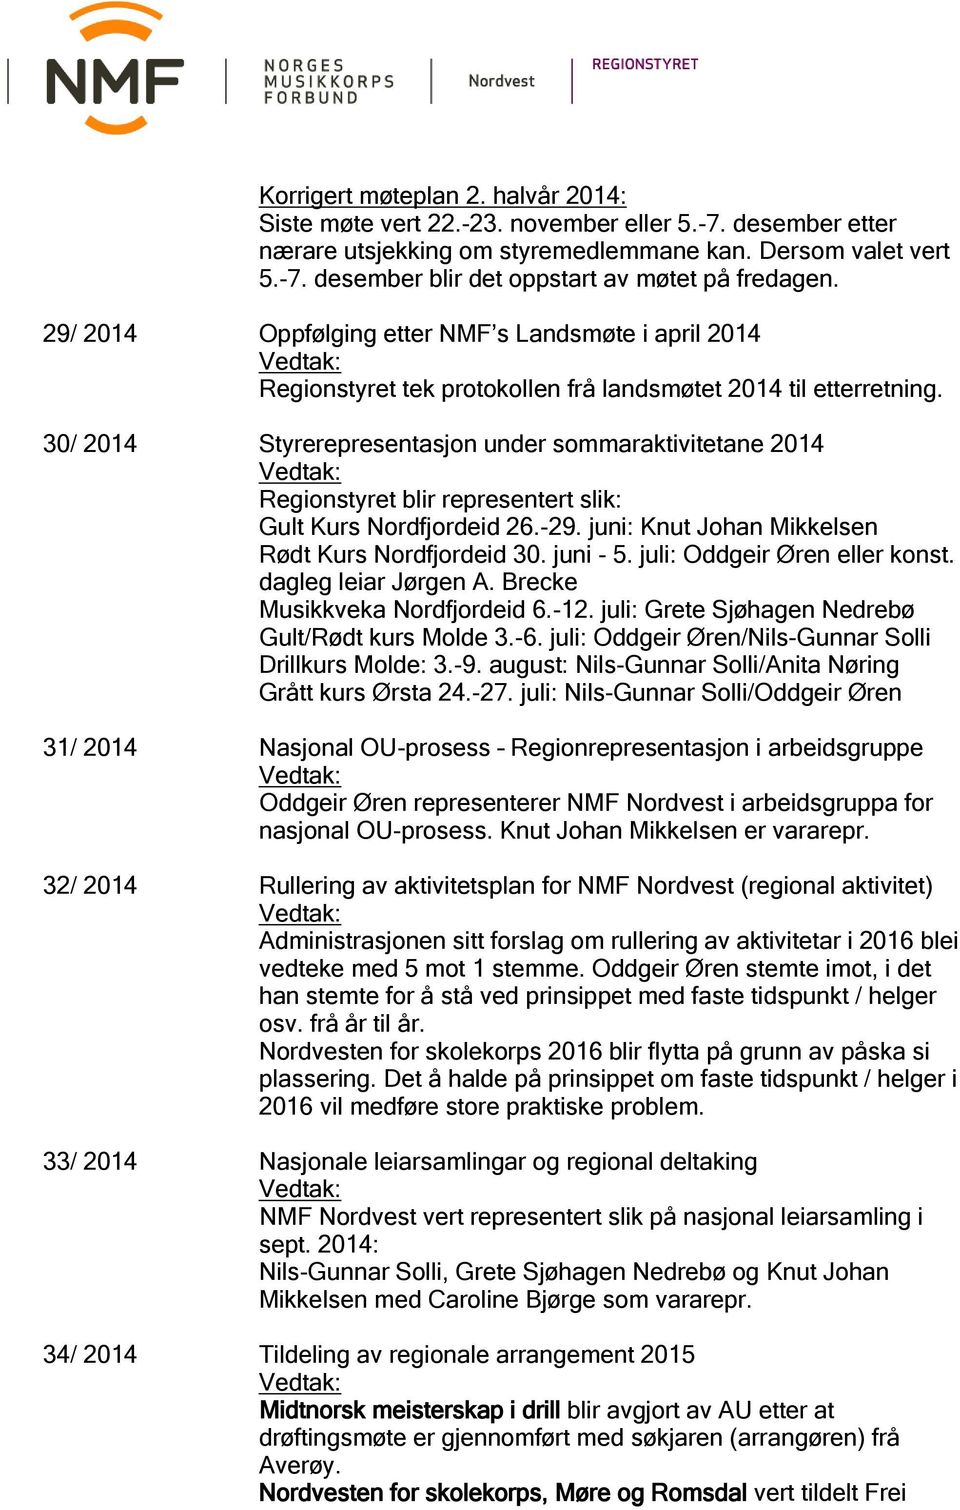 30/ 2014 Styrerepresentasjon under sommaraktivitetane 2014 Regionstyret blir representert slik: Gult Kurs Nordfjordeid 26.-29. juni: Knut Johan Mikkelsen Rødt Kurs Nordfjordeid 30. juni - 5.